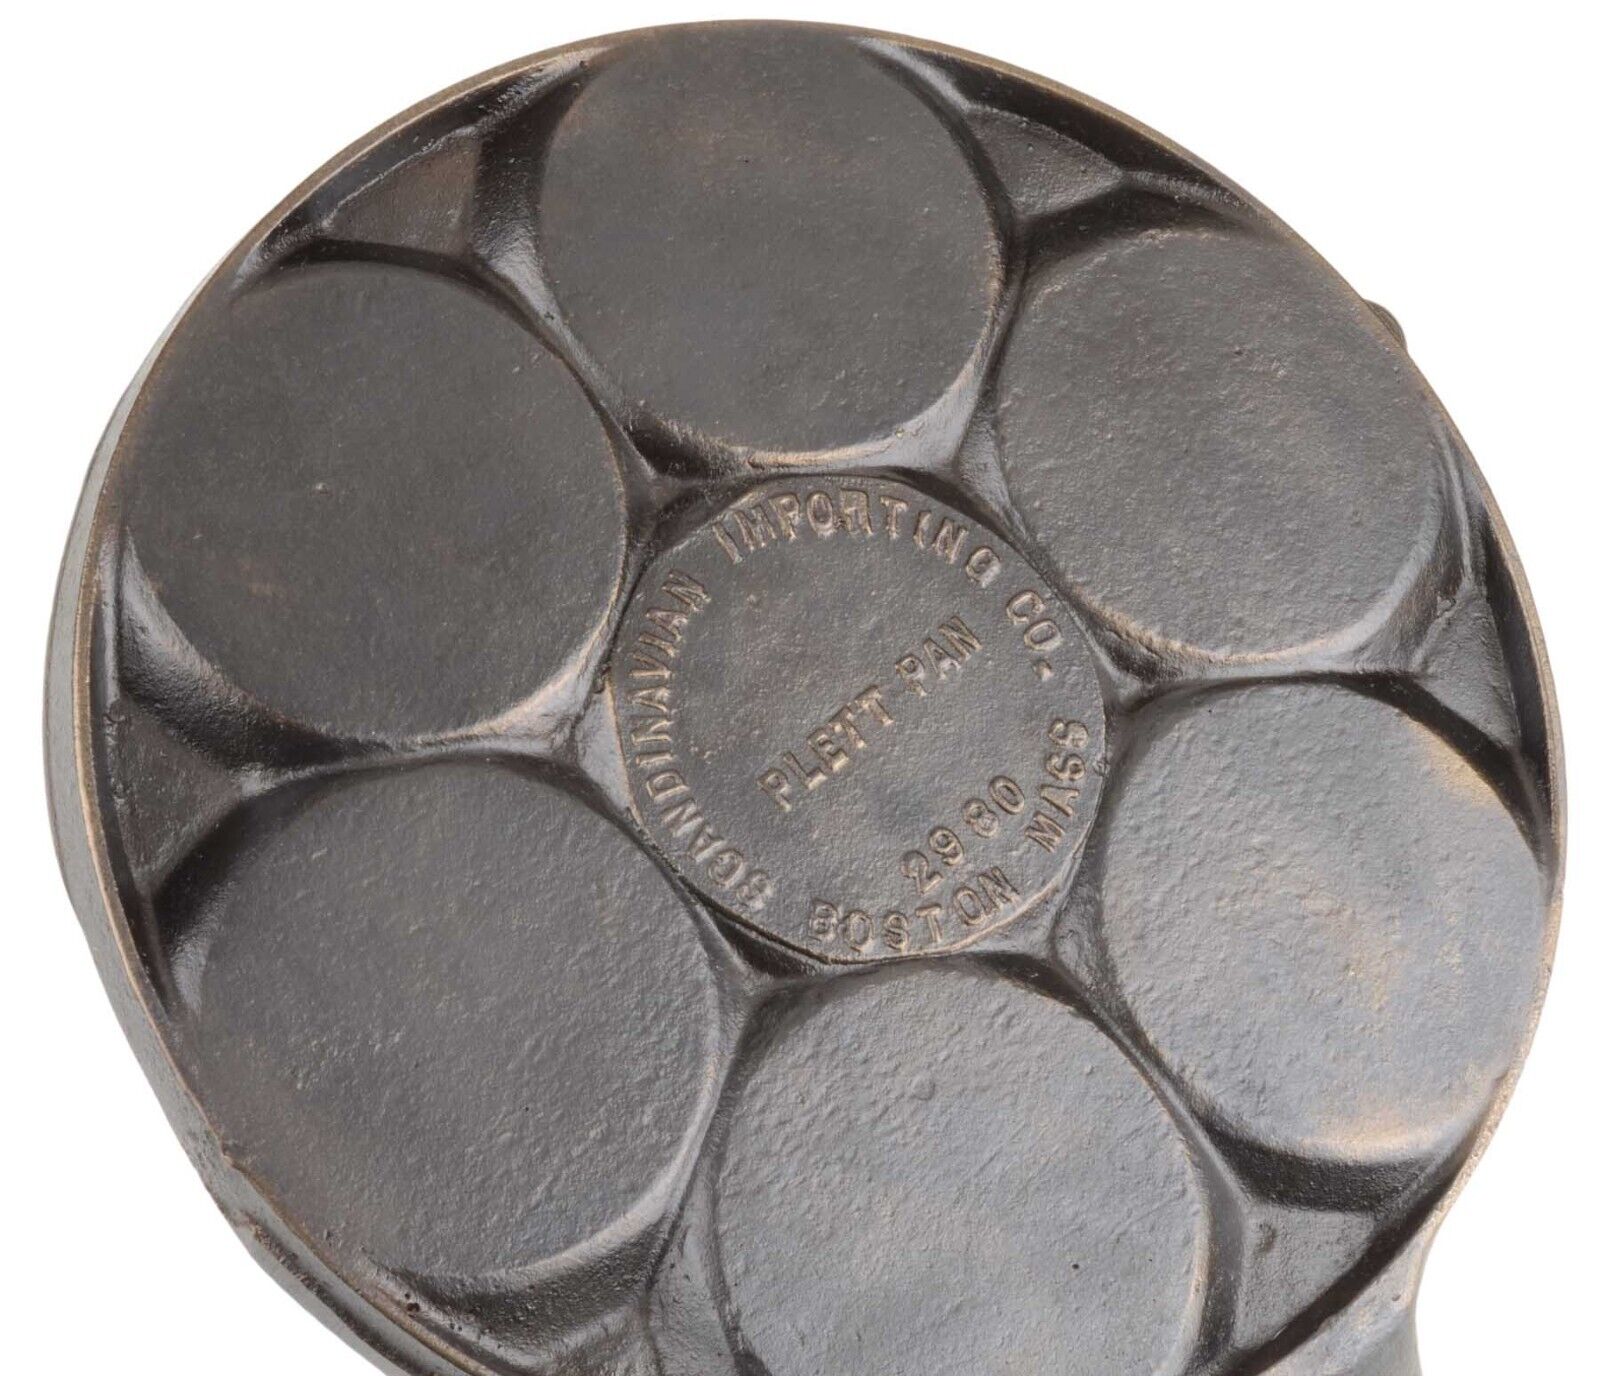 Vintage Auth Griswold No 34 (2980) Scandinavian Imports Cast Iron Plett Pan